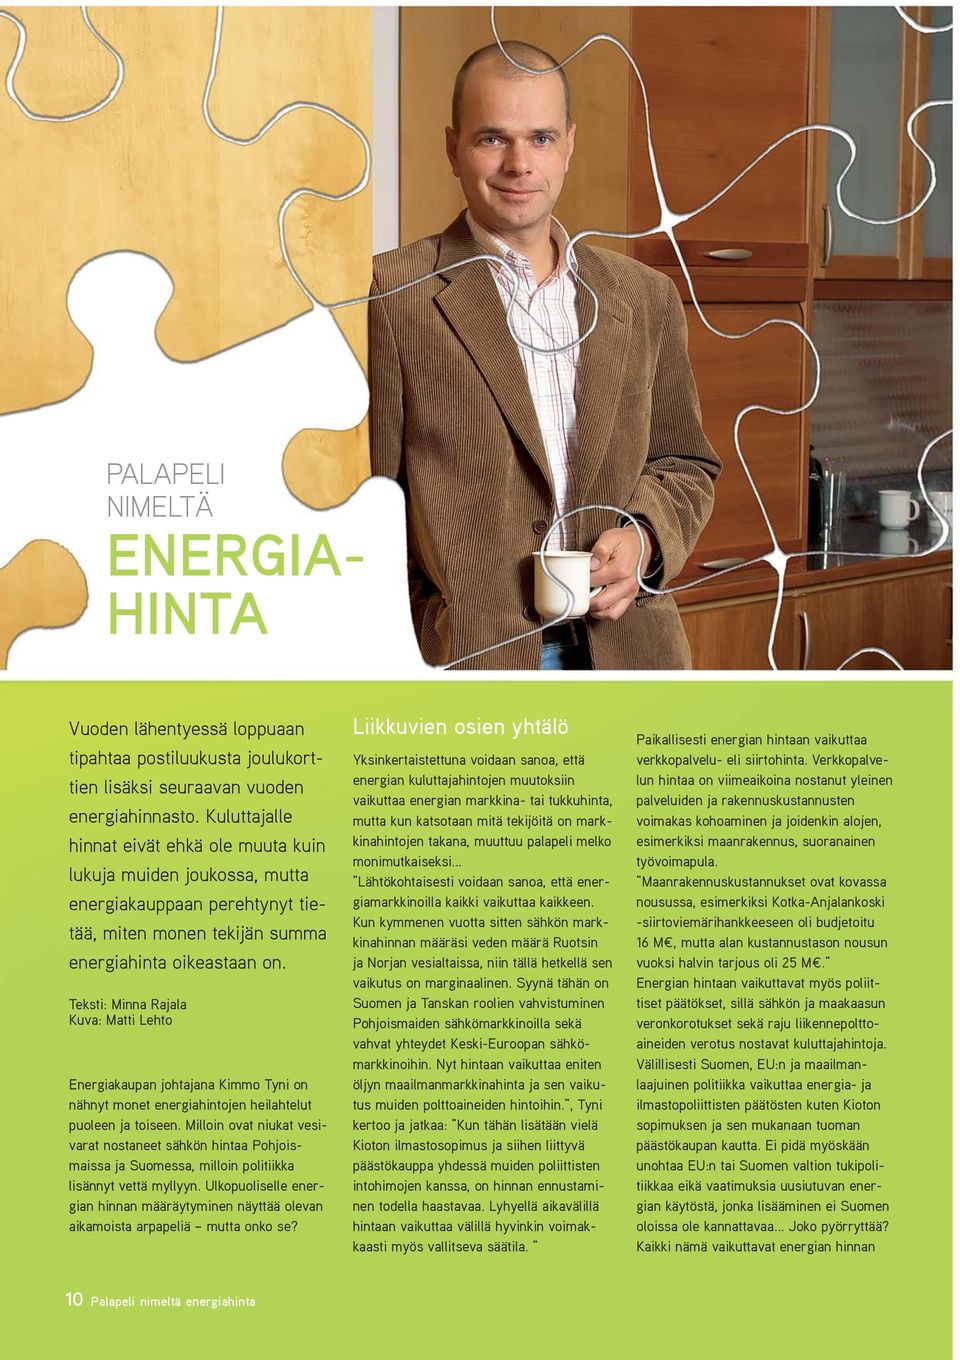 Teksti: Minna Rajala Kuva: Matti Lehto Energiakaupan johtajana Kimmo Tyni on nähnyt monet energiahintojen heilahtelut puoleen ja toiseen.